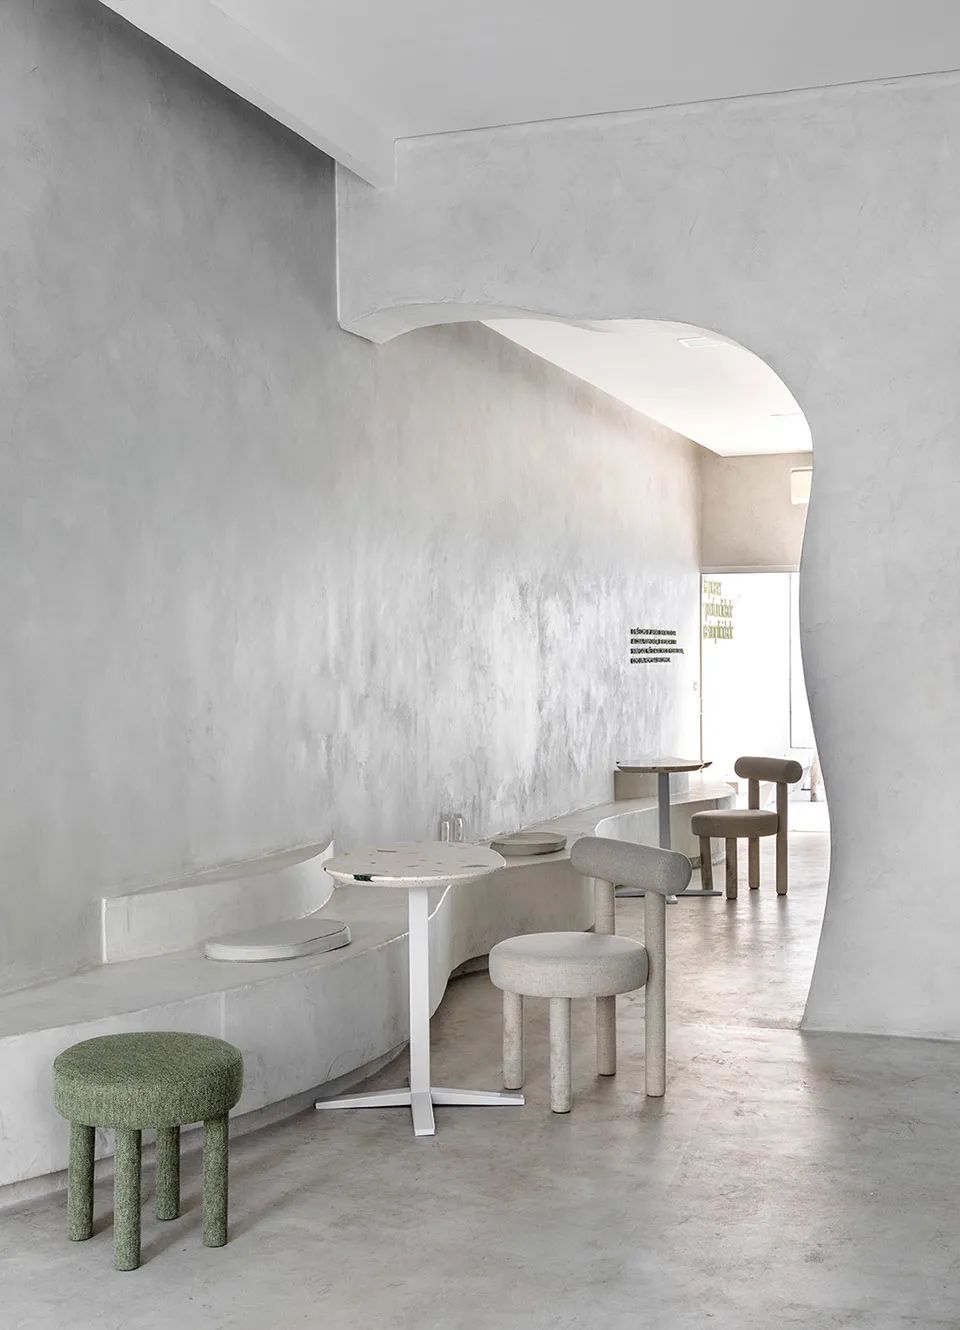 座位區 巴西抹茶咖啡店室內設計 Brazeil matcharia Green Blood interior design／Studio Guilherme Garcia